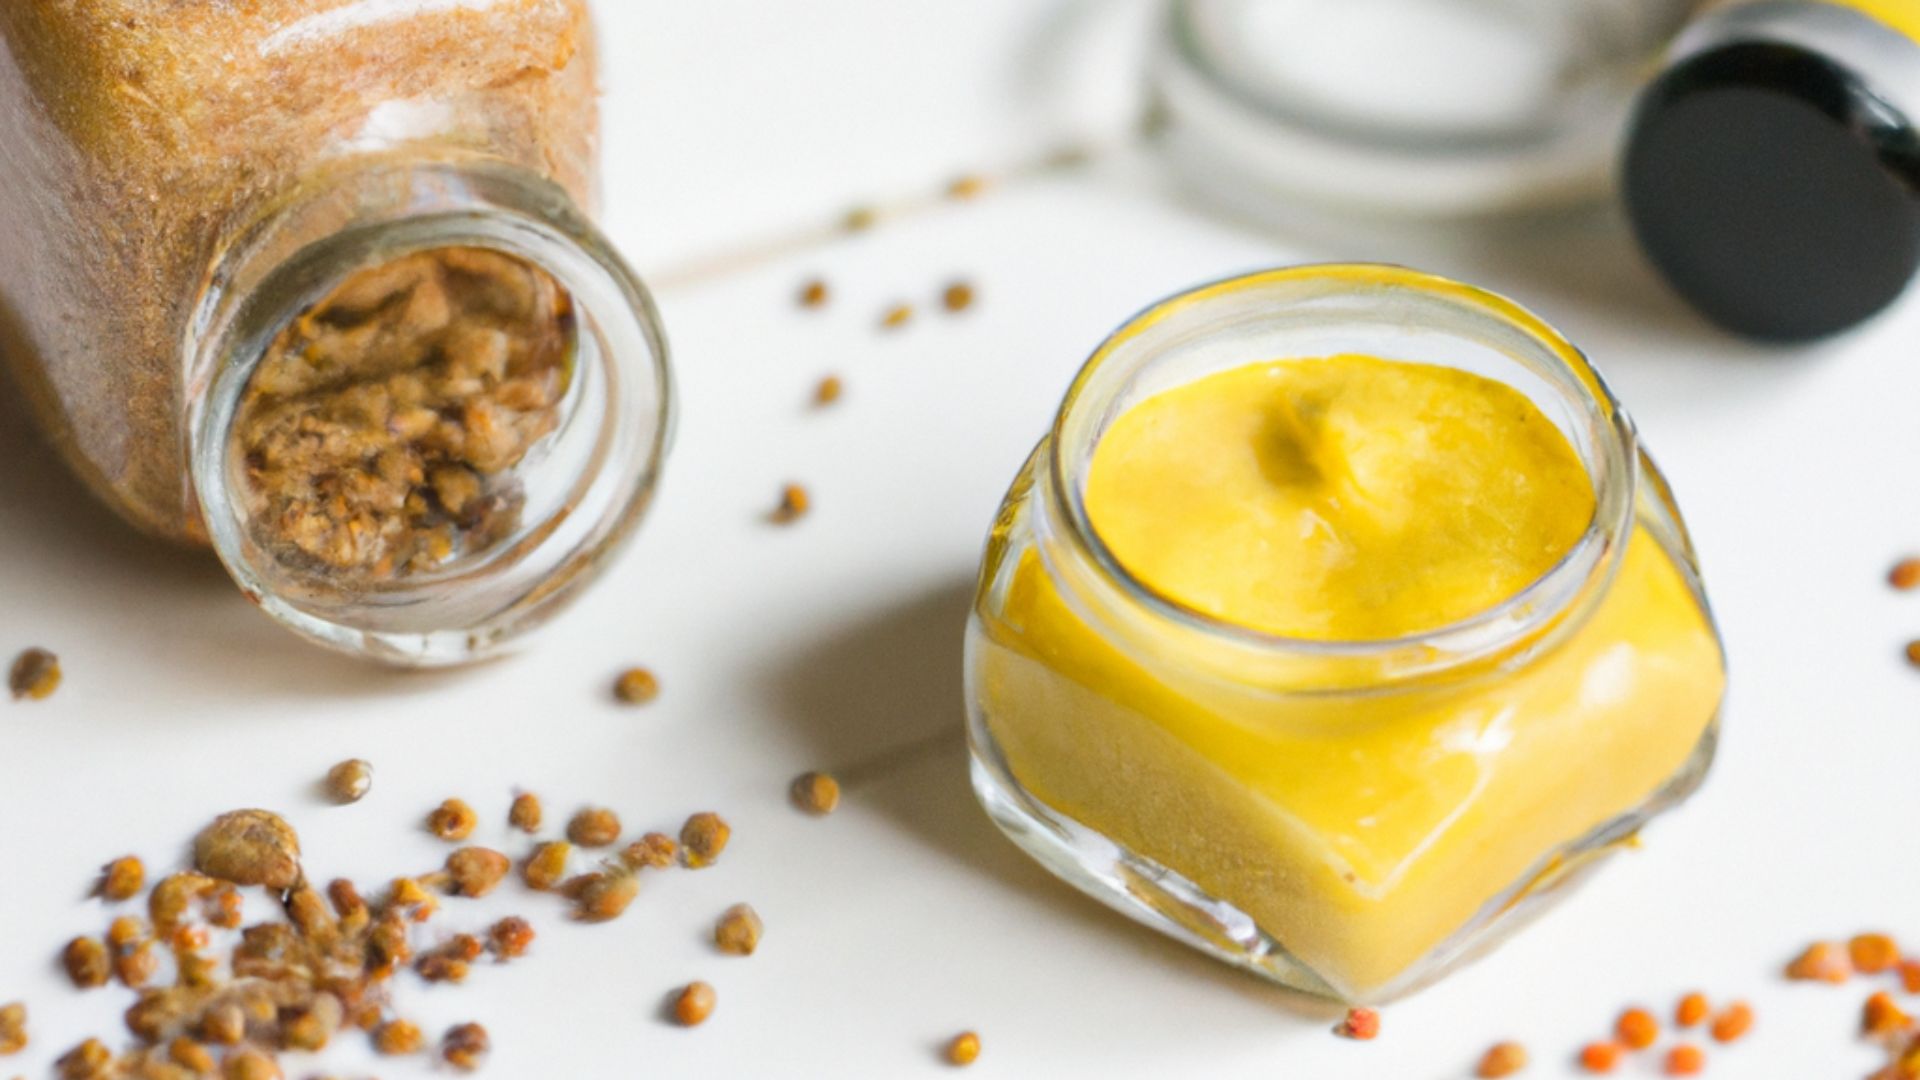  Lär dig hur du tillagar honungssenapssås och ger dina recept en speciell touch